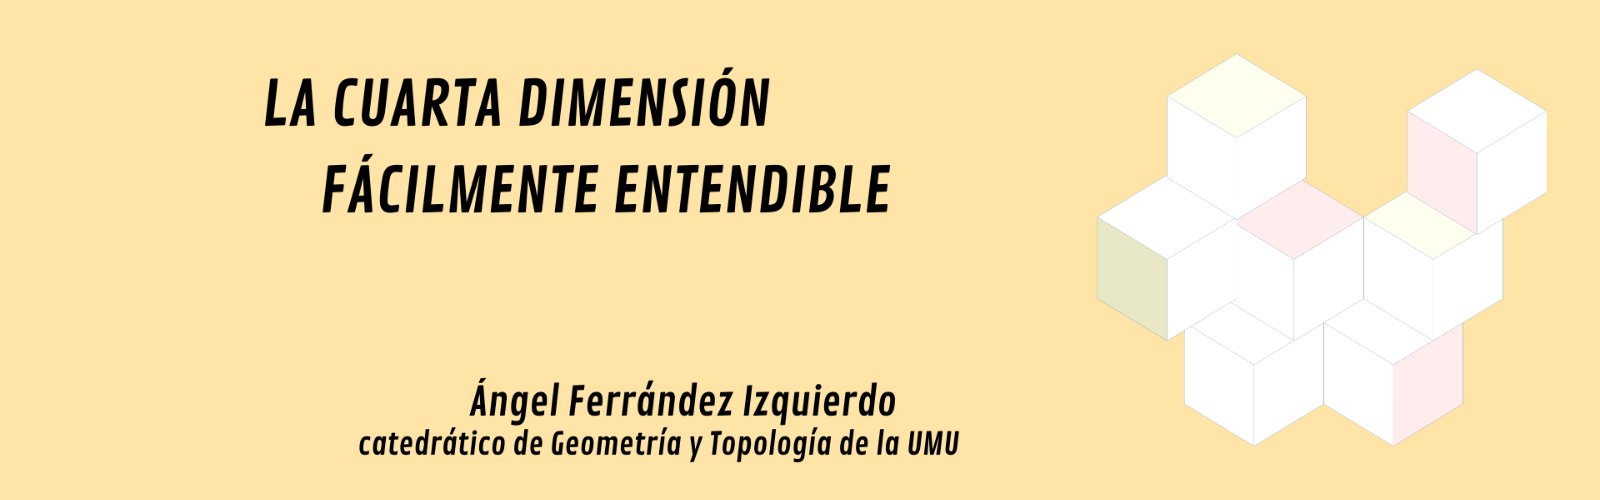 La cuarta dimensión en una conferencia de la Universidad de Murcia